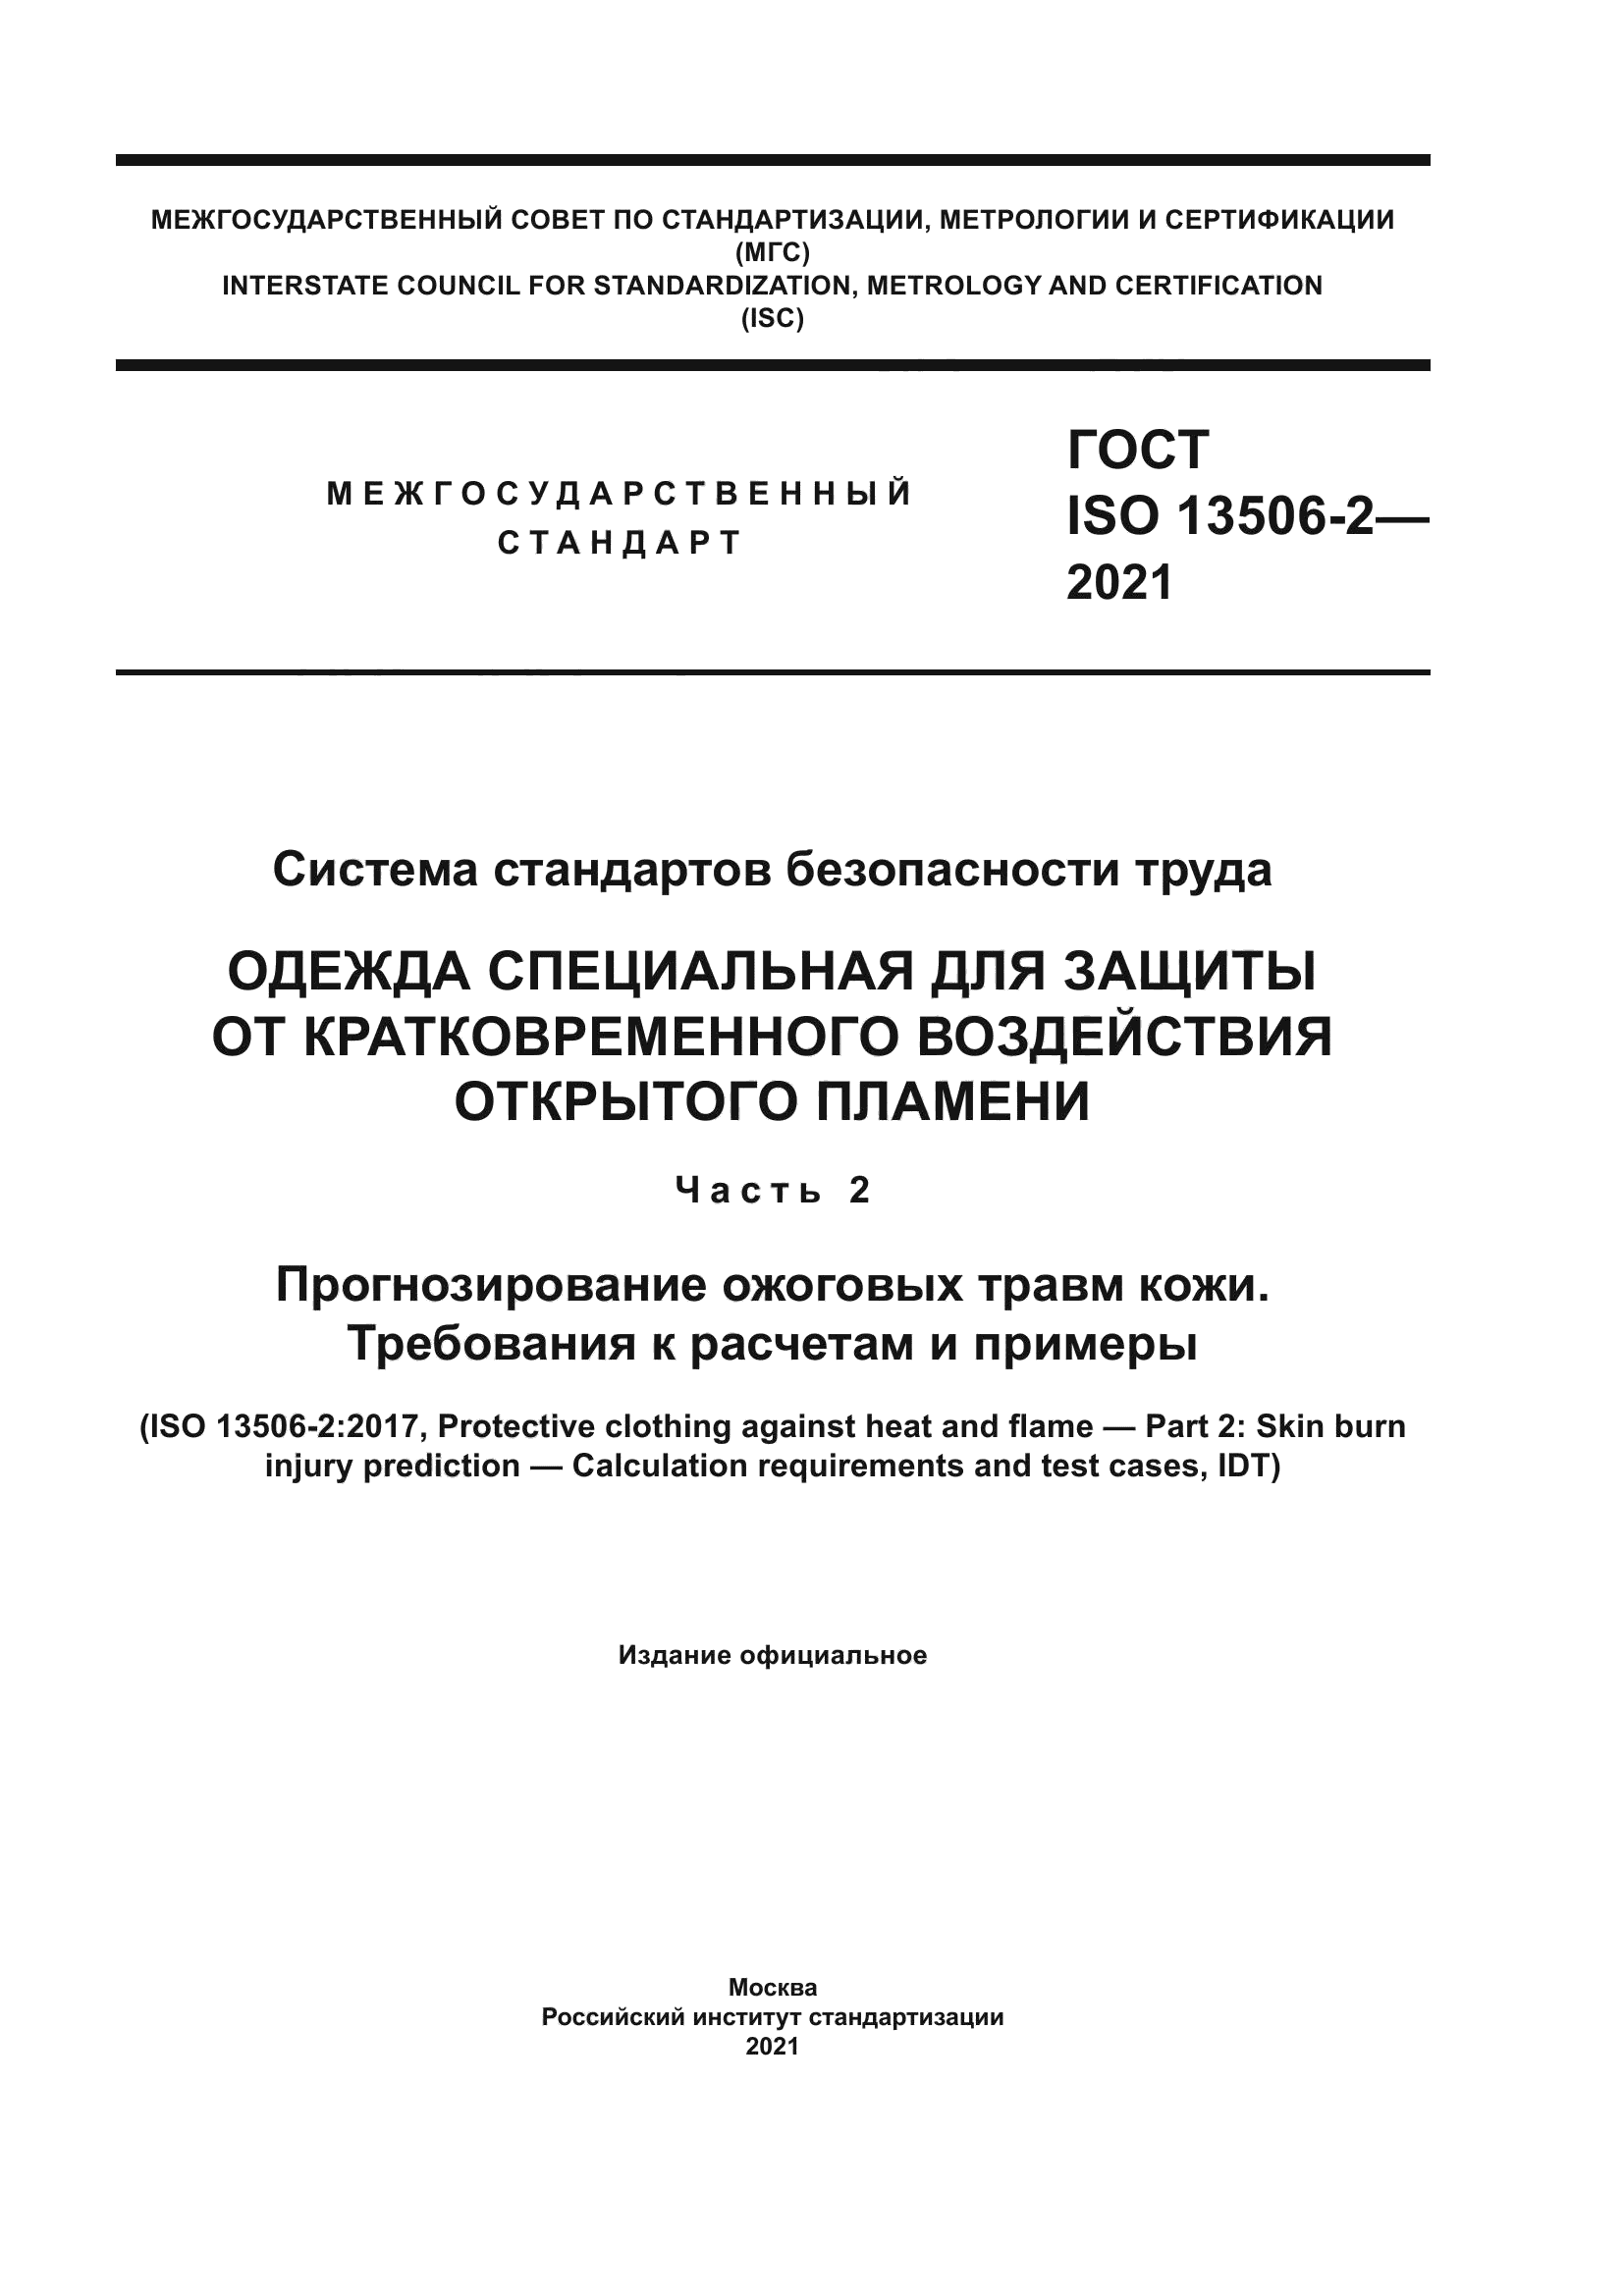 ГОСТ ISO 13506-2-2021